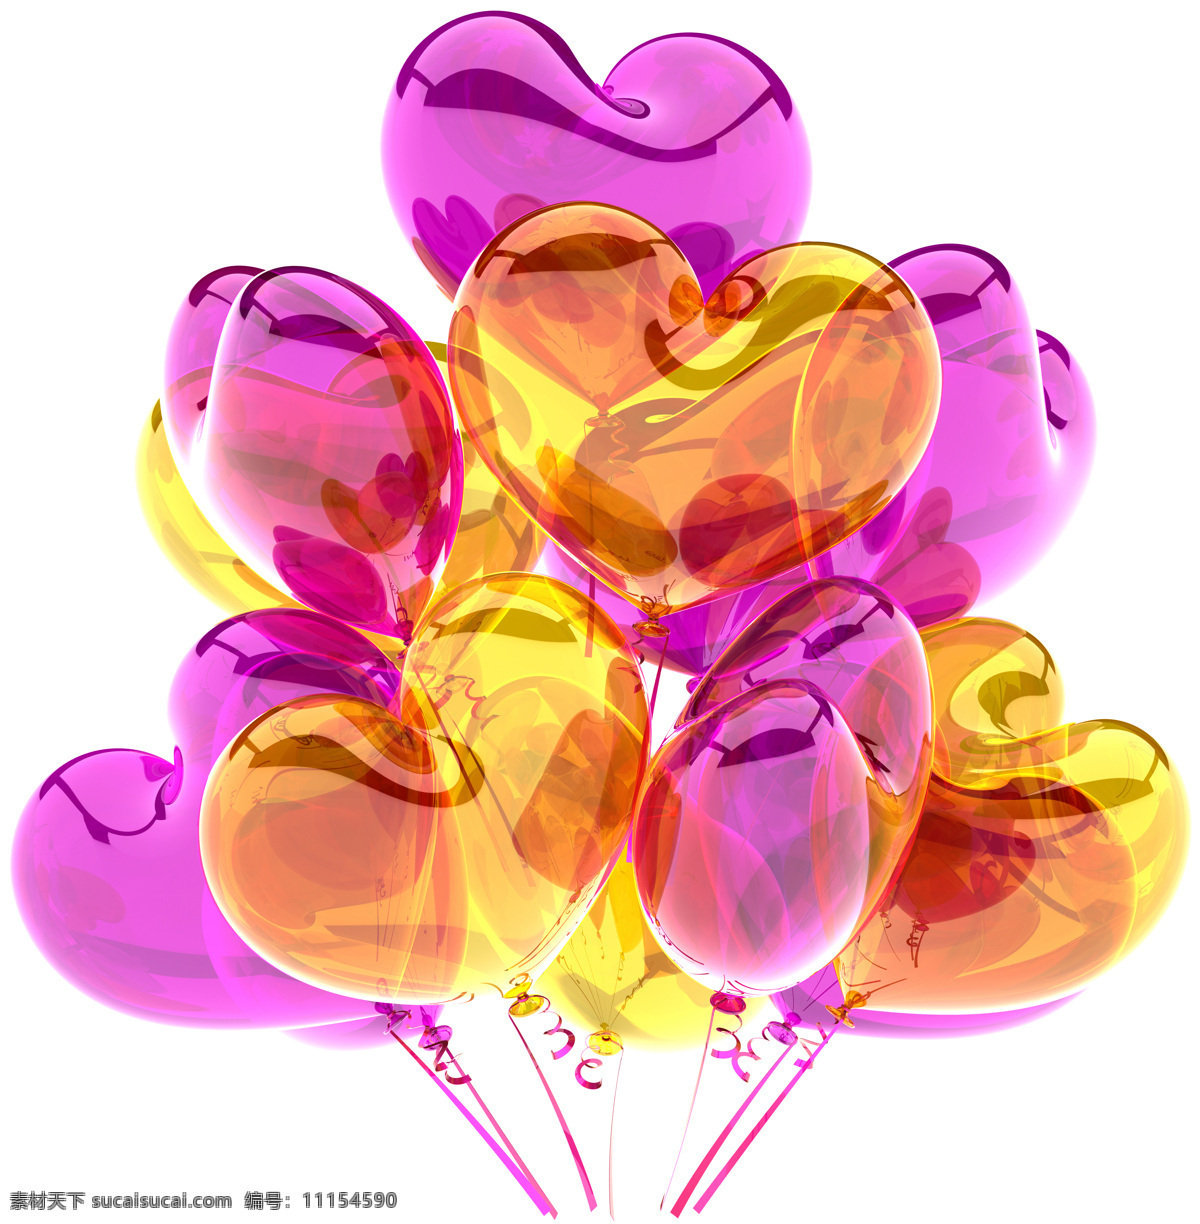 彩色 心形 气球 高清 彩色气球 彩球 节日气球 节日彩球 节日素材 节日庆祝 3d设计 心形气球 其他类别 生活百科 白色